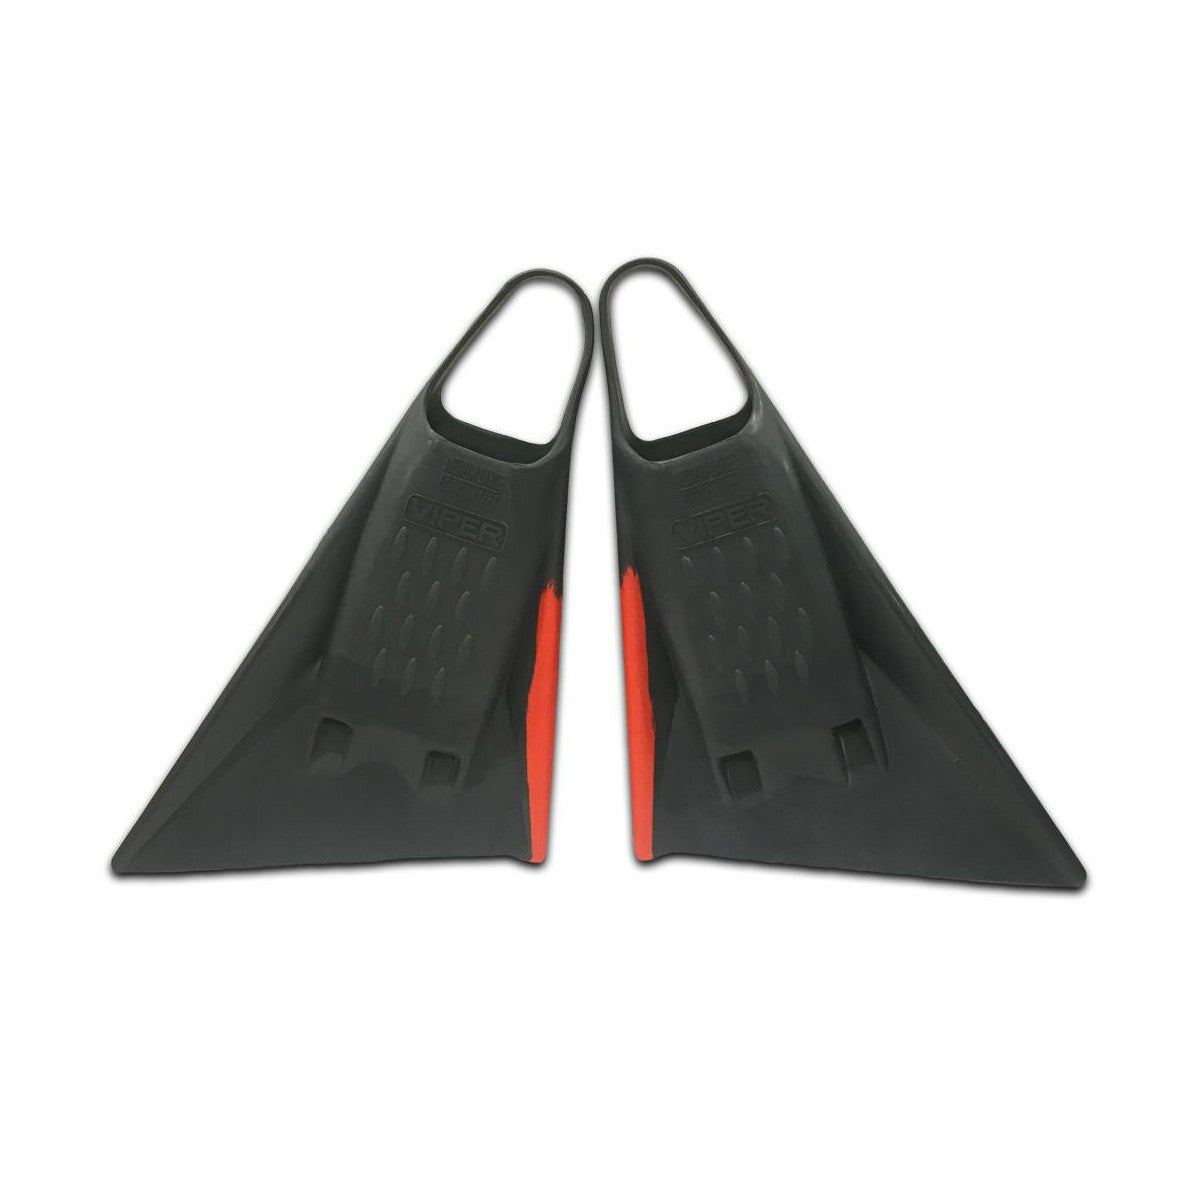 MS VIPER Delta 2.0 - Bodyboard Fins - Gray / Red